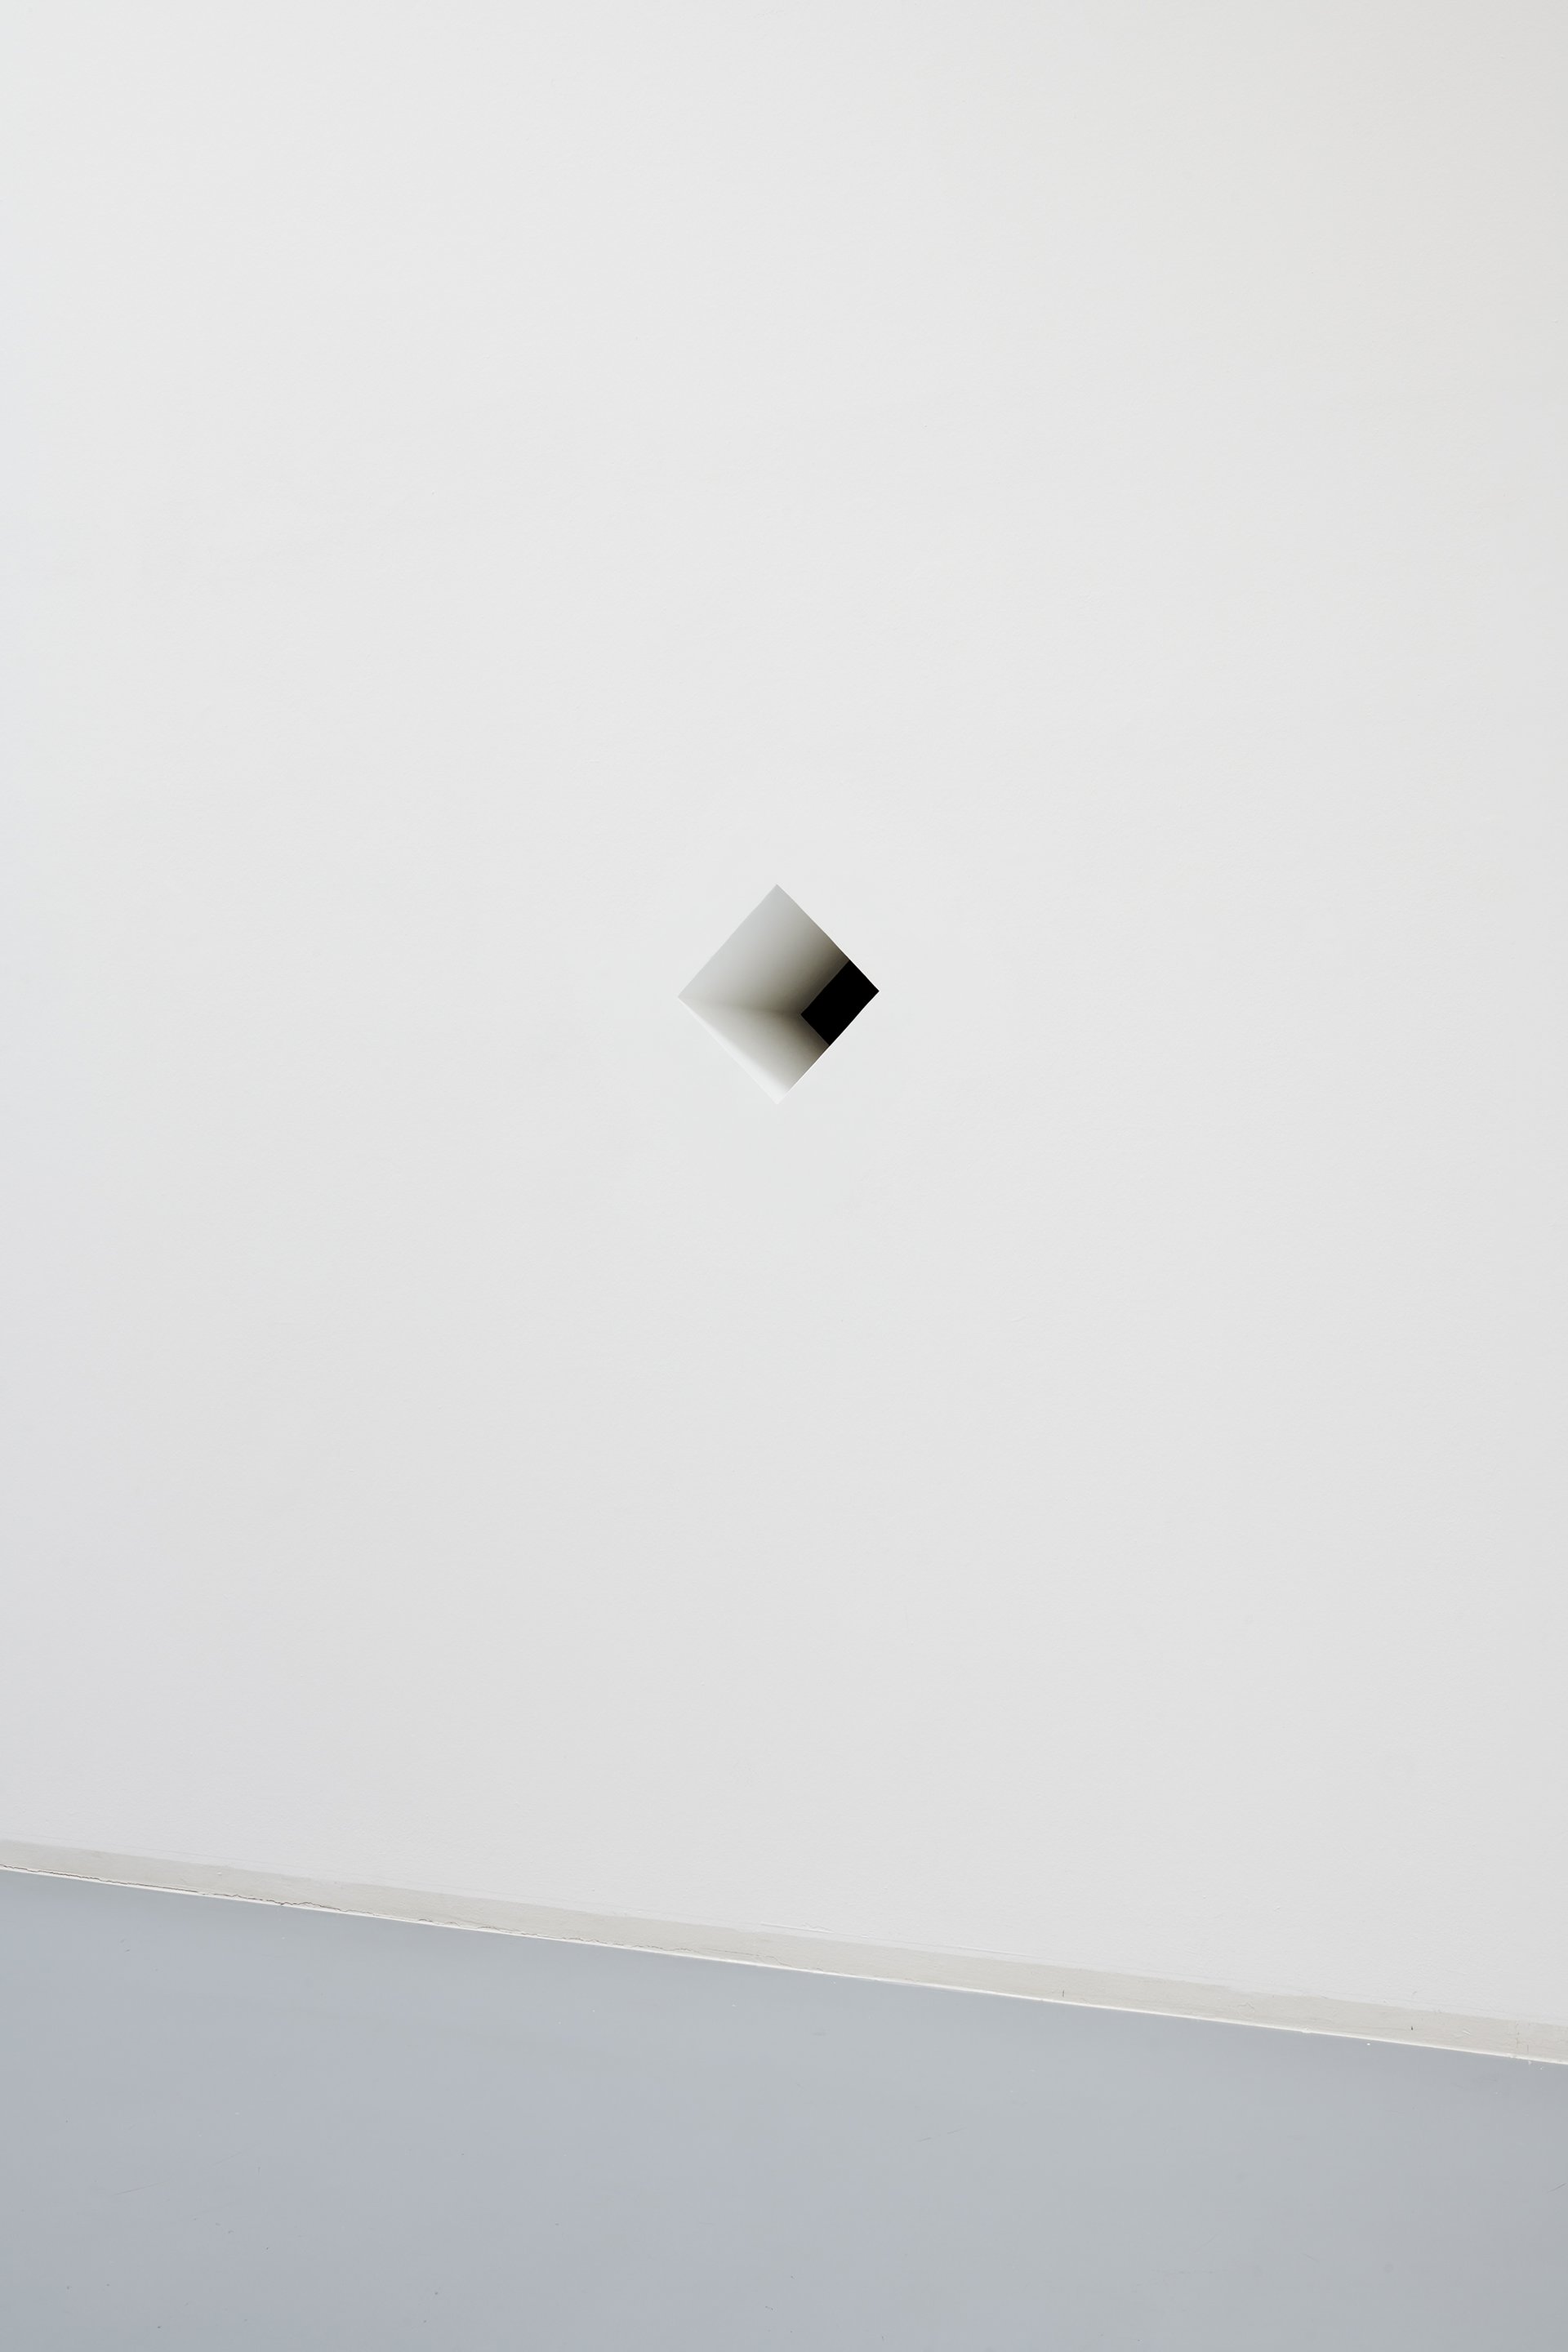 Anna-Sophie Berger: Duel, installation view, Bonner Kunstverein, 2020. Courtesy the artist, Galerie LAYR, Vienna and JTT, New York. Photo: Mareike Tocha